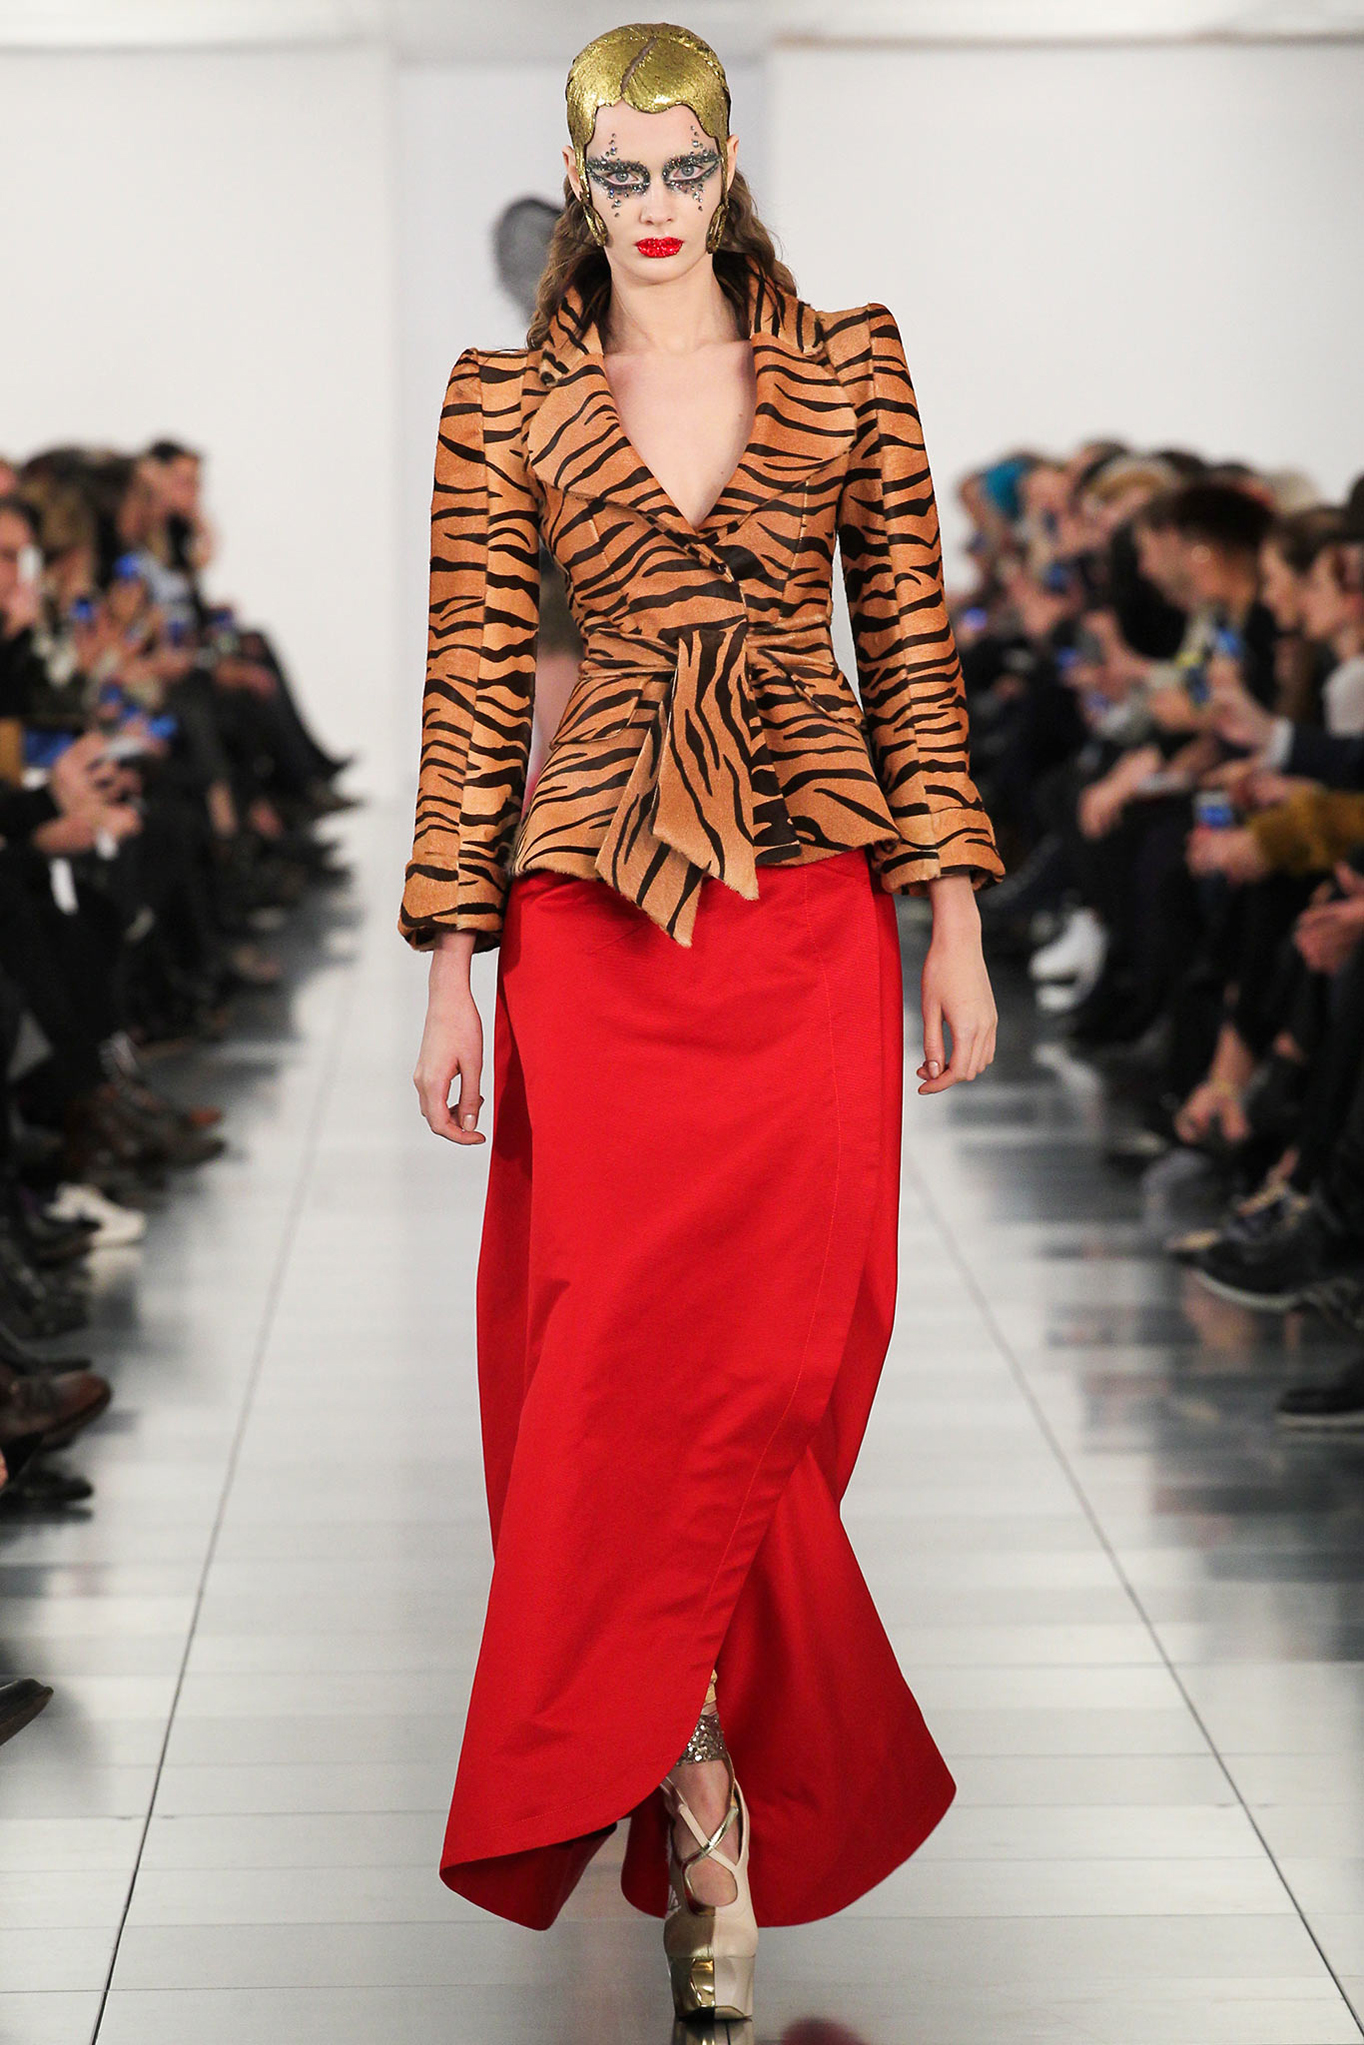 Margiela haute couture 2015 - Con hổ nhưng không phải năm hổ và những dấu ấn của “chúa sơn lâm” trên sàn catwalk